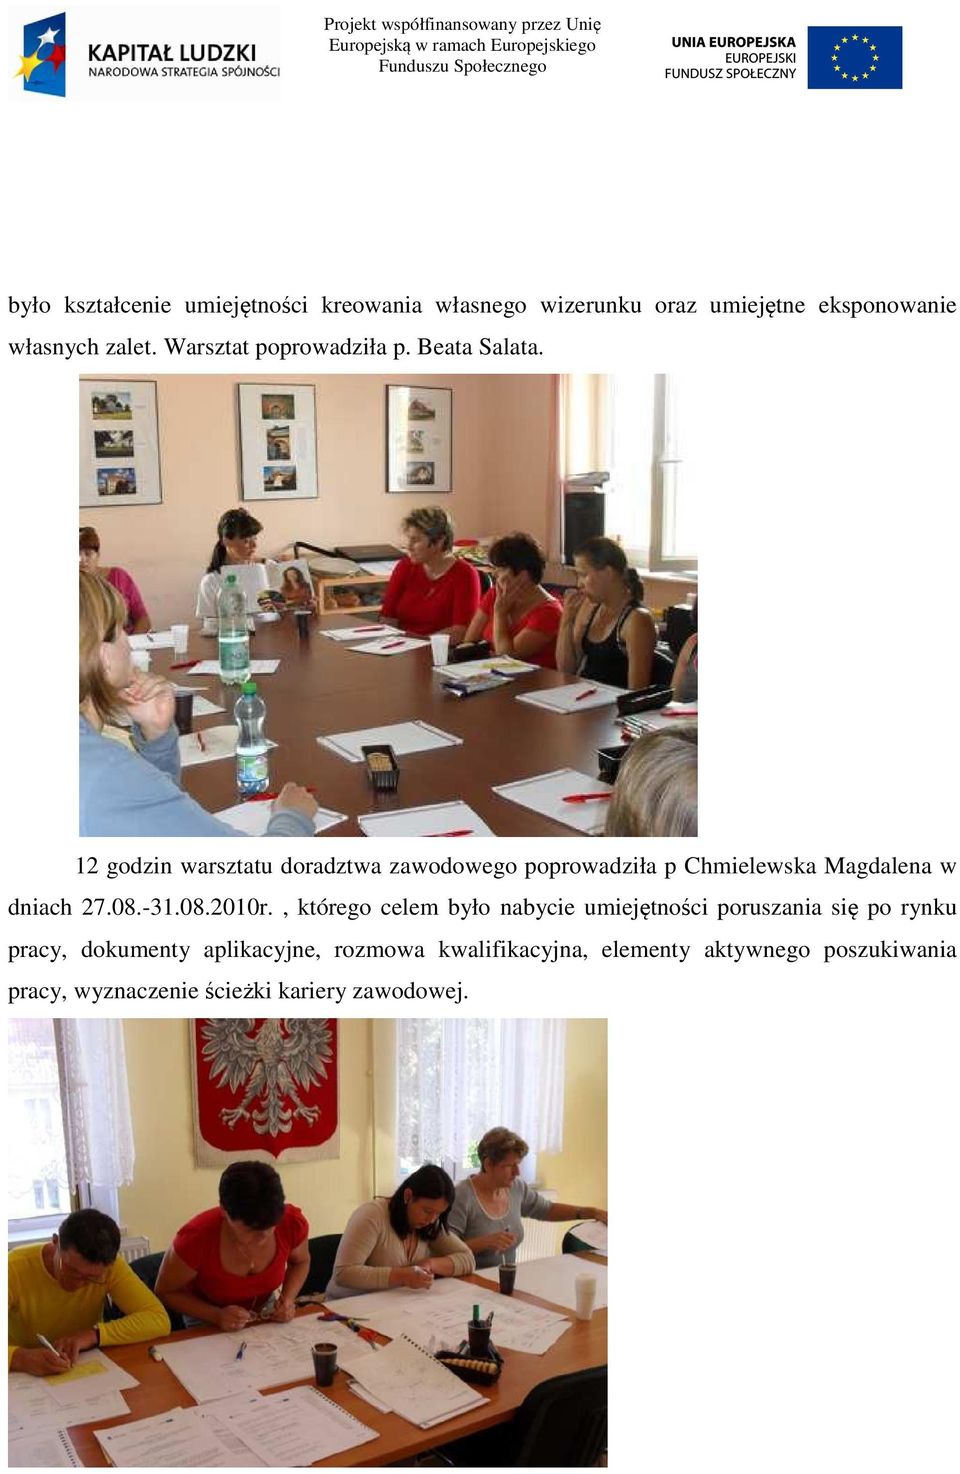 12 godzin warsztatu doradztwa zawodowego poprowadziła p Chmielewska Magdalena w dniach 27.08.-31.08.2010r.